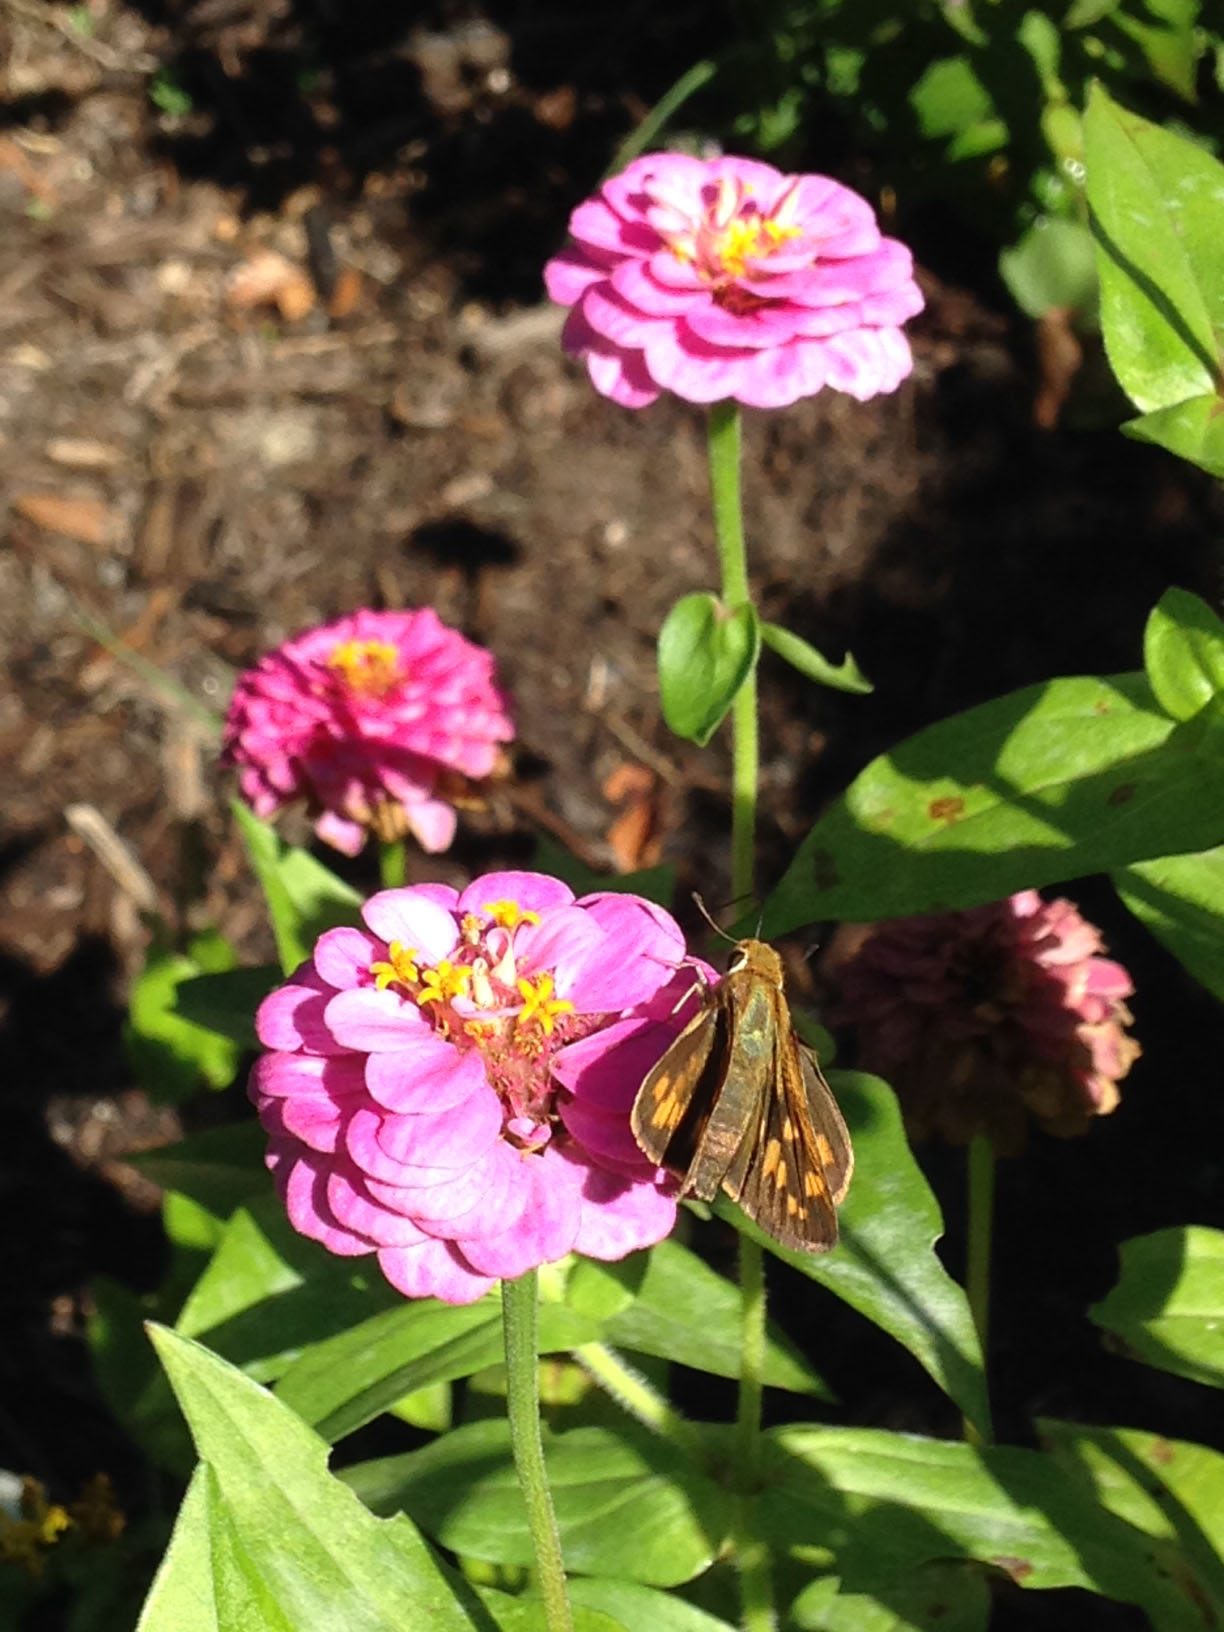 Conservation Biology Club pollinator garden